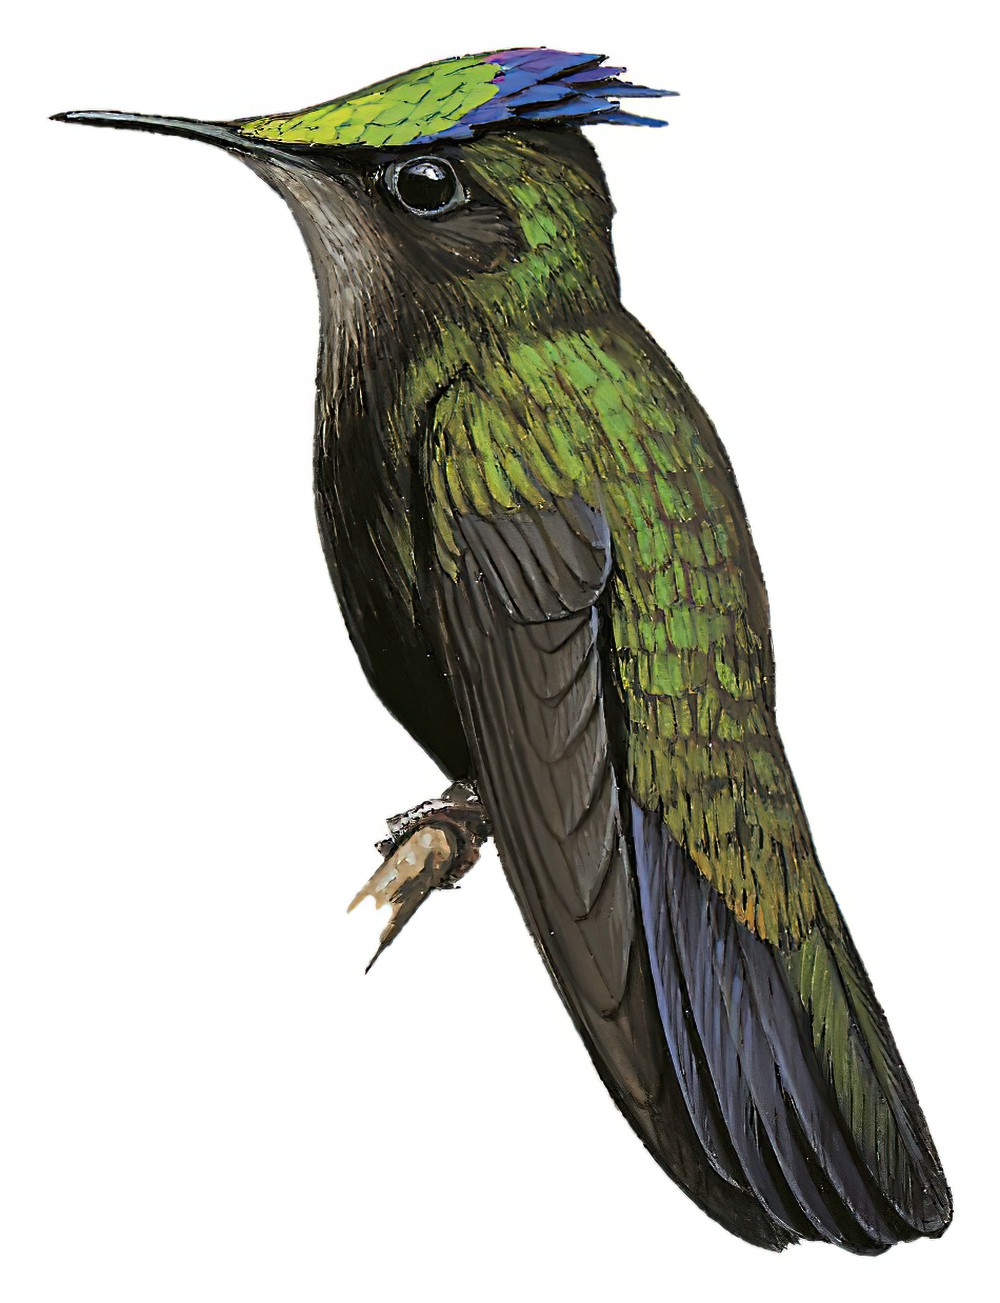 Antillean Crested Hummingbird / Orthorhyncus cristatus